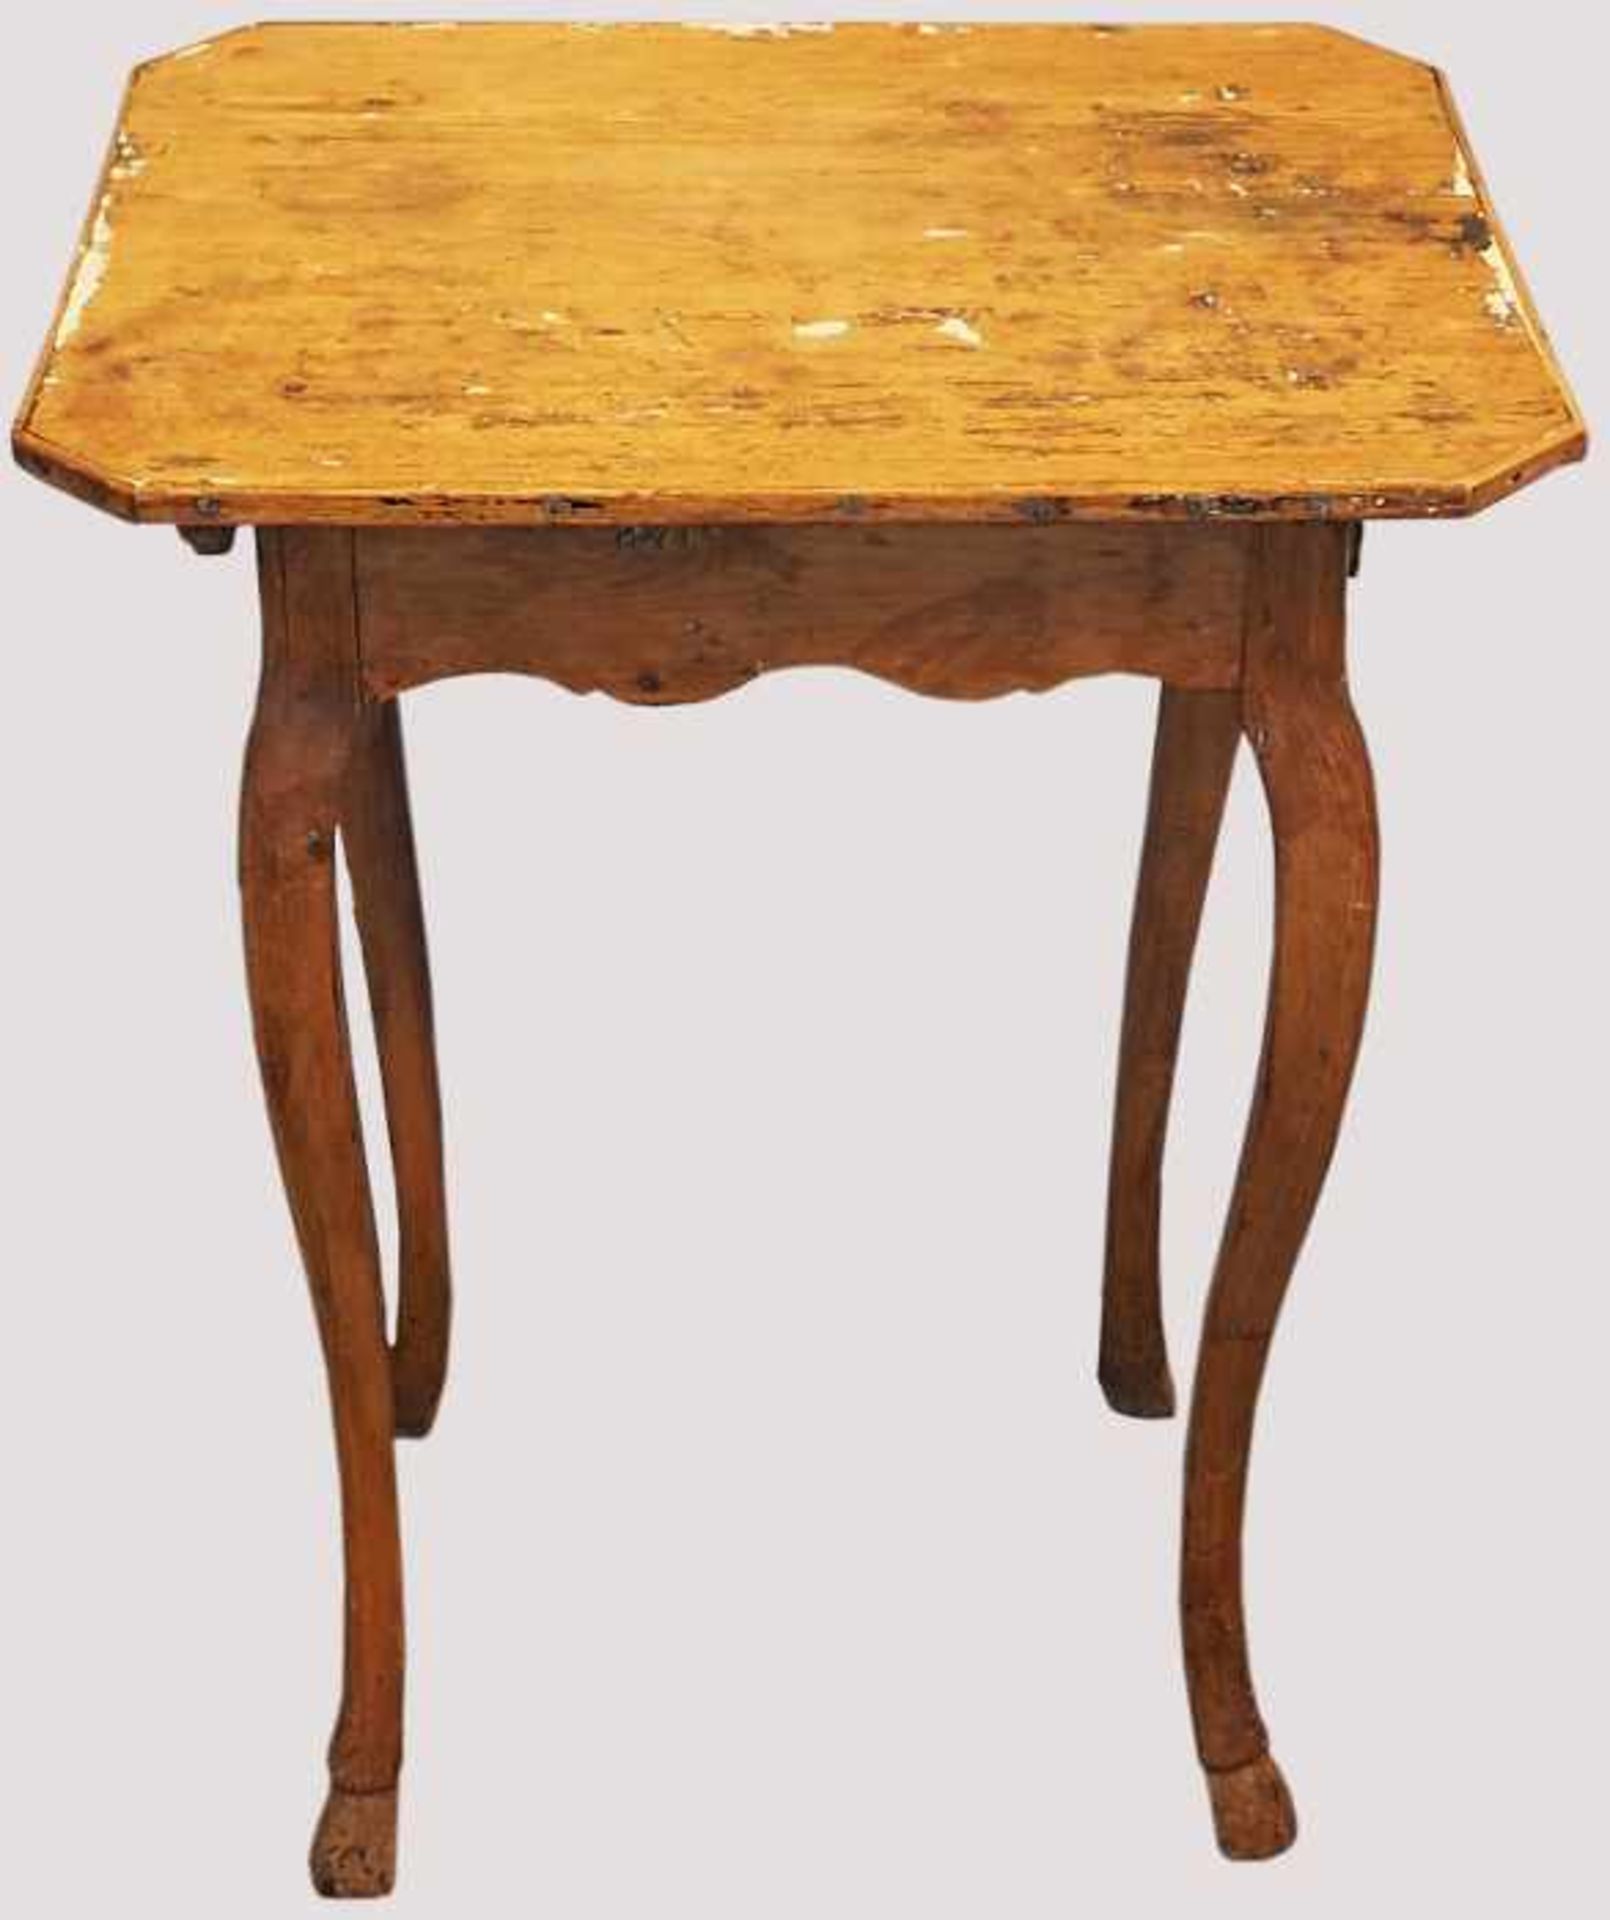 Barocktischchen, 18. Jh.Holz geschnitzt, ca. 78x47x56cm, Asp. - Bild 2 aus 3